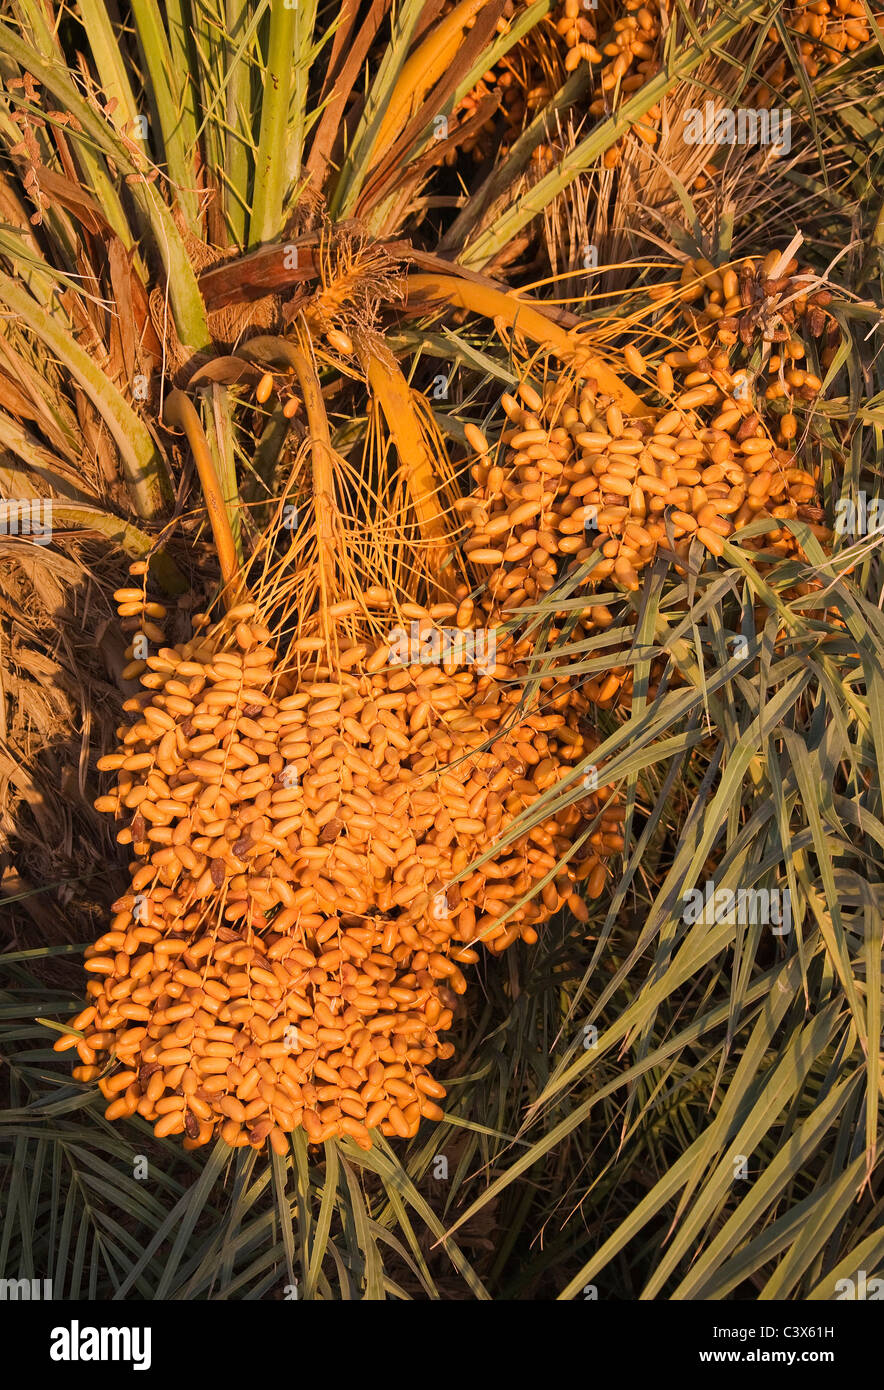 Data Palm (Phoenix dactylifera) con grappoli di date mature pronte per essere raccolte. Il Marocco. Foto Stock